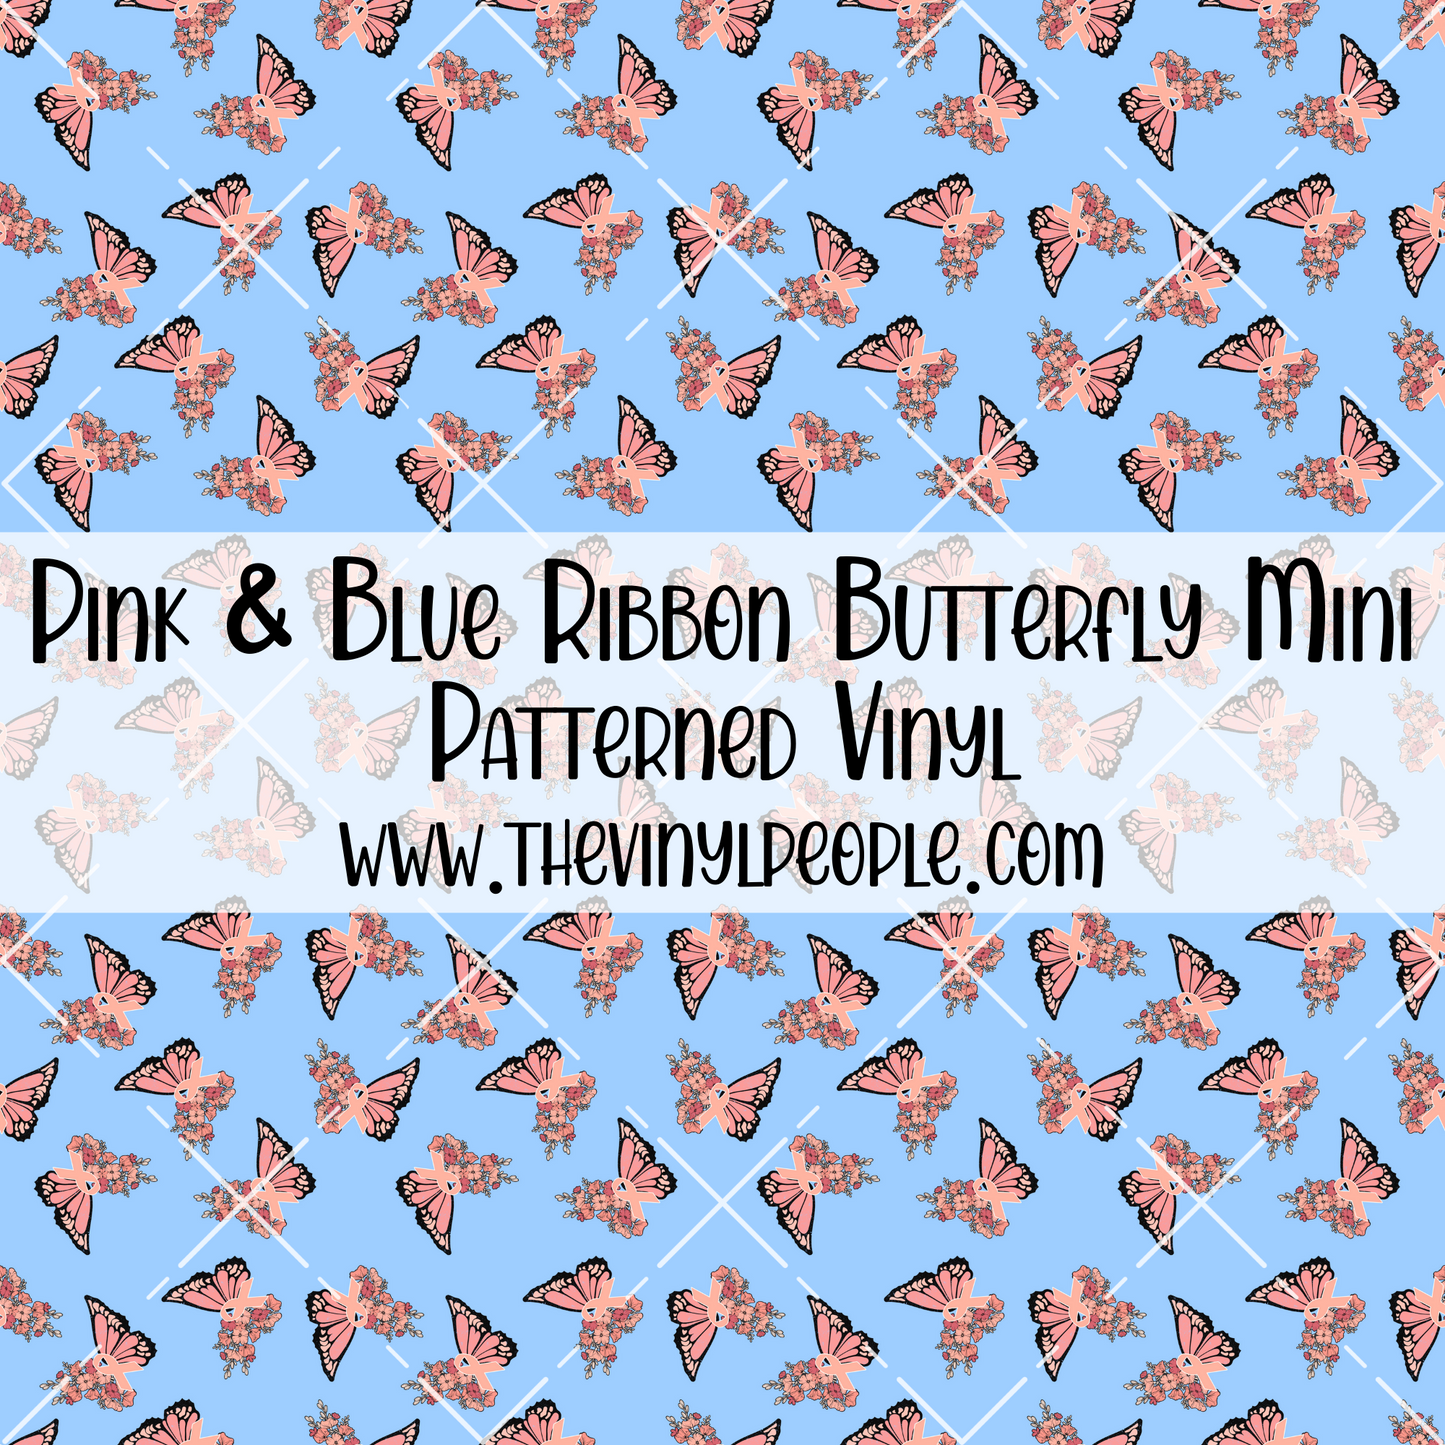 Pink & Blue Ribbon Butterfly Patterned Vinyl